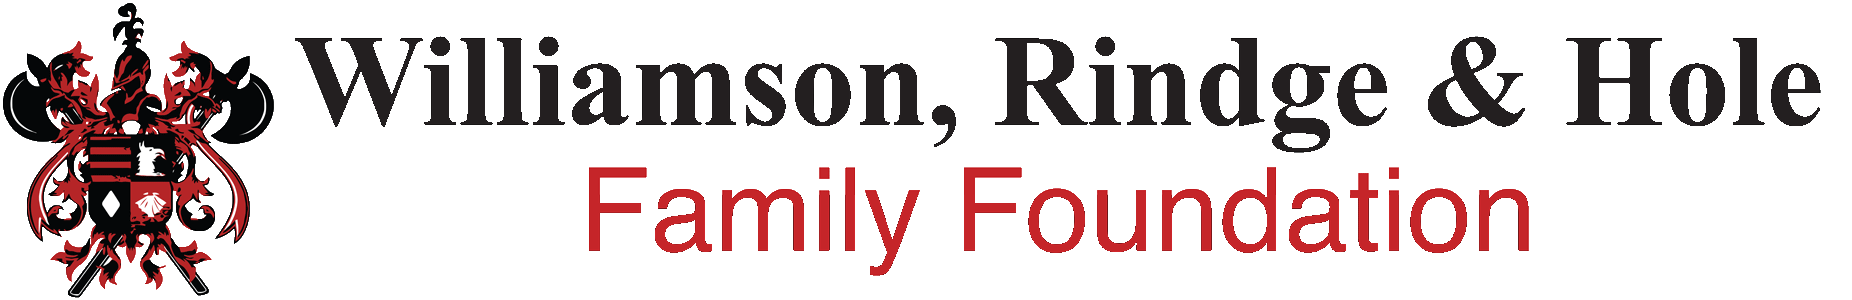 Williamson, Rindge & Hole Family Foundation Logo